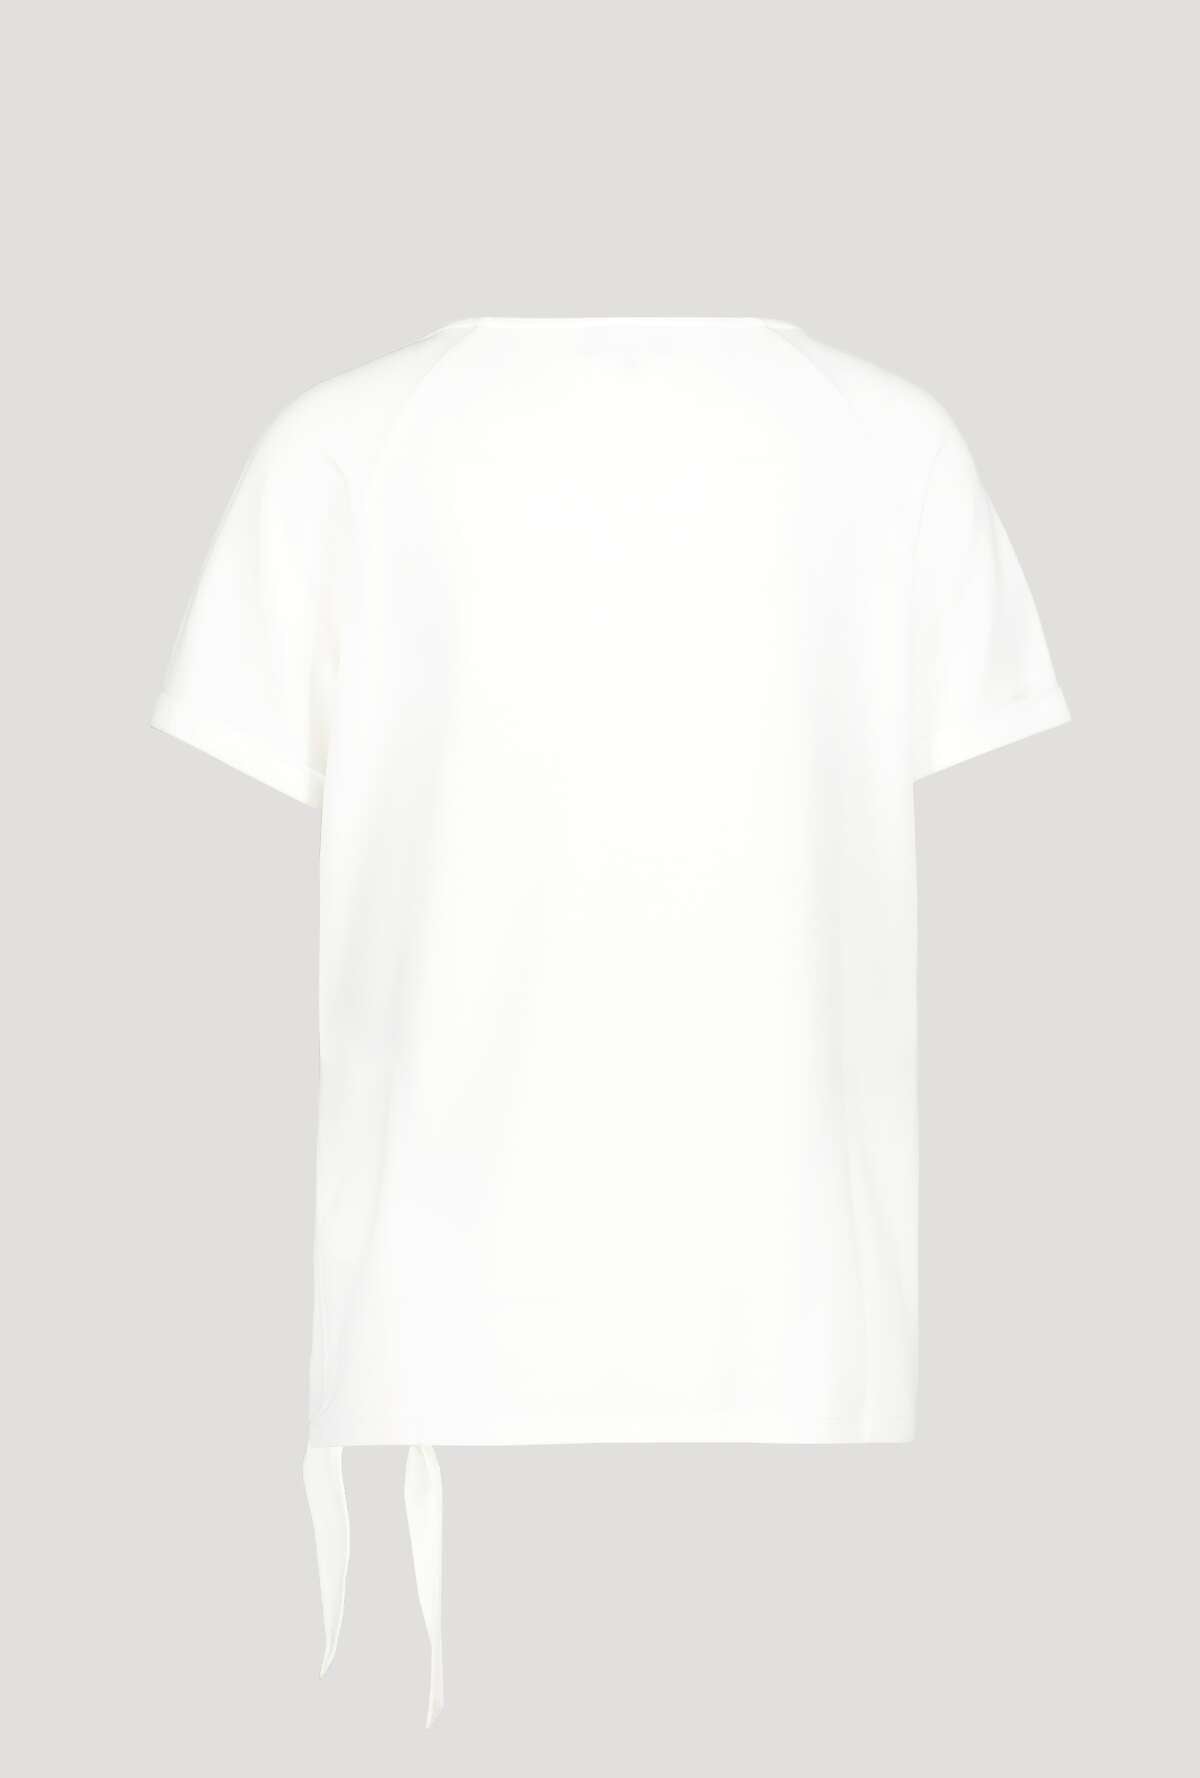 Monari T-Shirt  406157